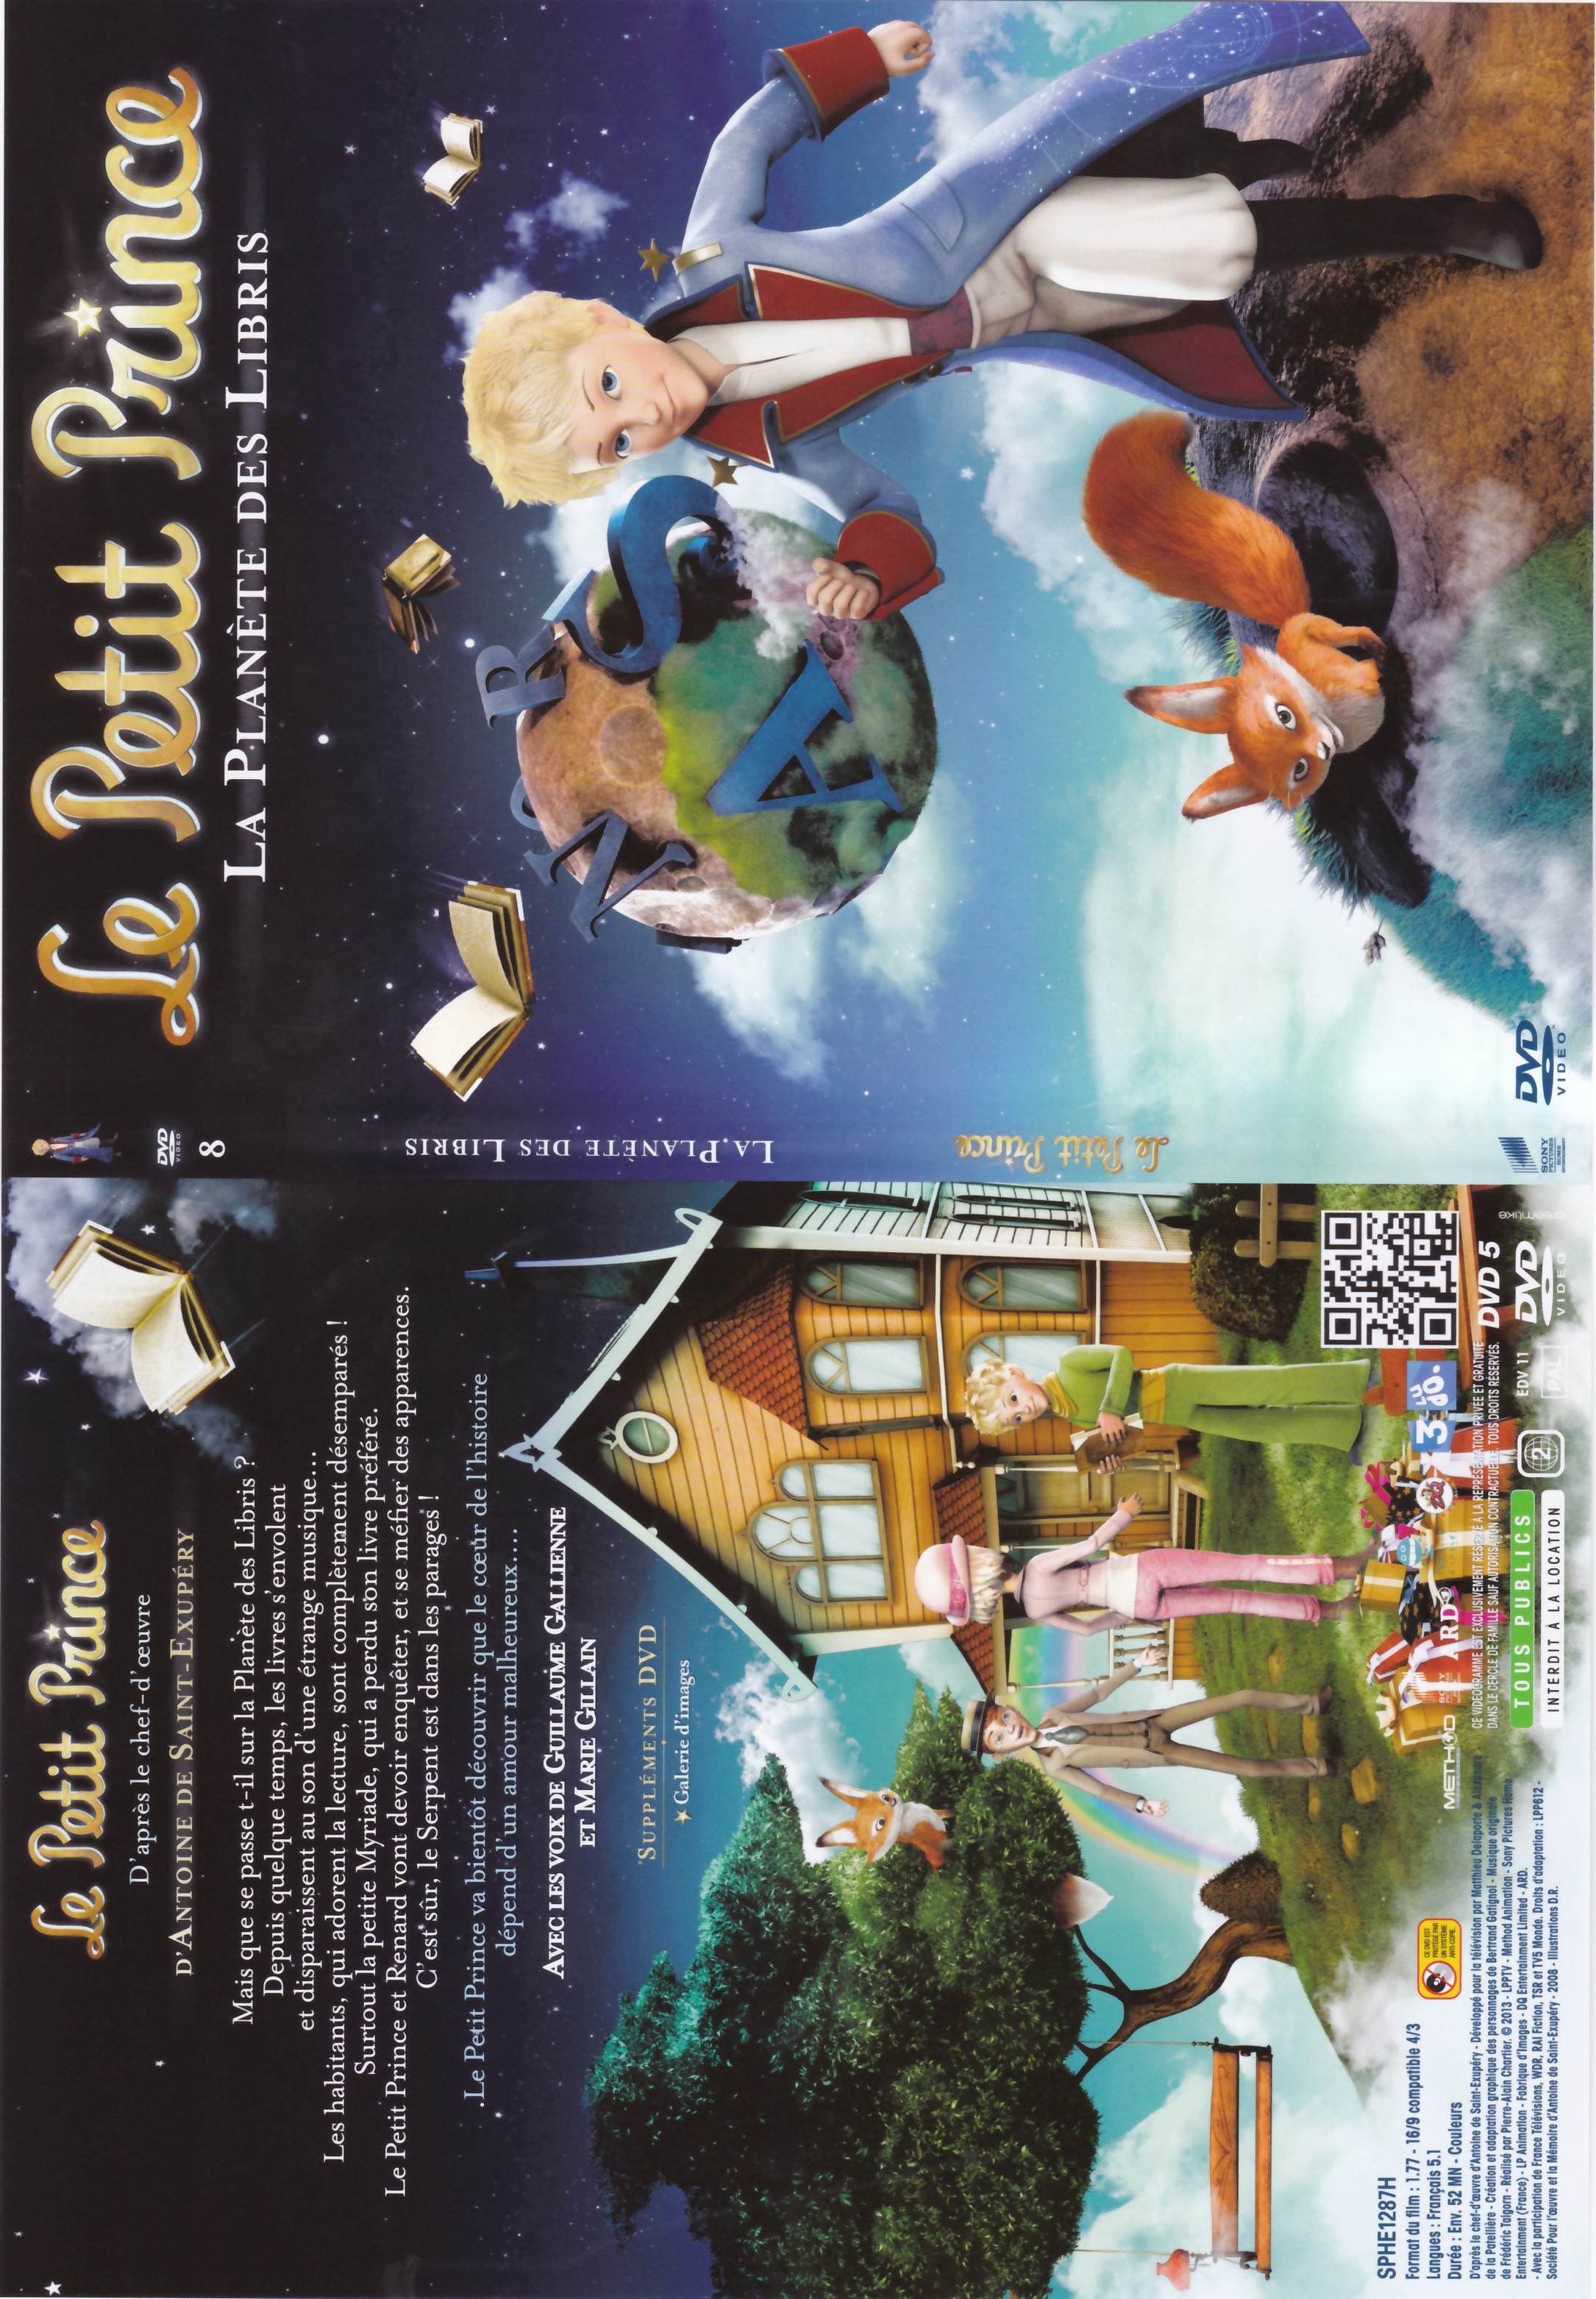 Jaquette DVD Le Petit Prince - 8- La Planete des Libris